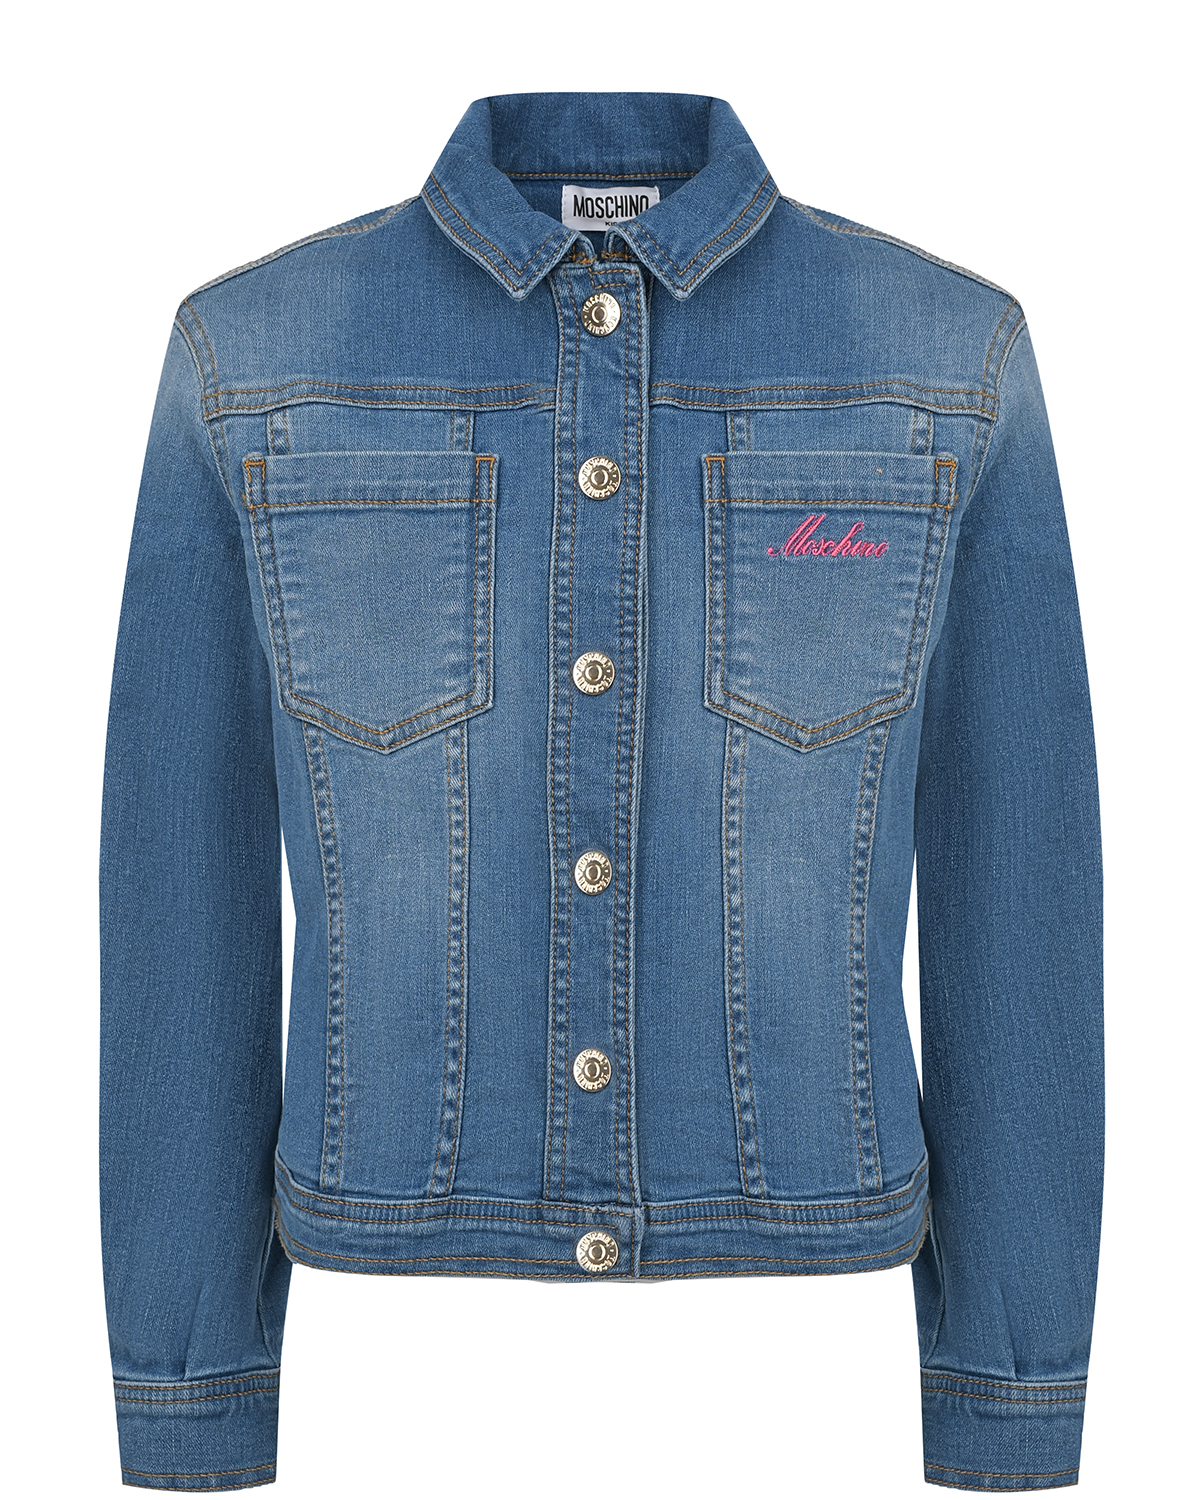 Джинсовая куртка с вышивкой "мишка" Moschino, размер 128, цвет синий